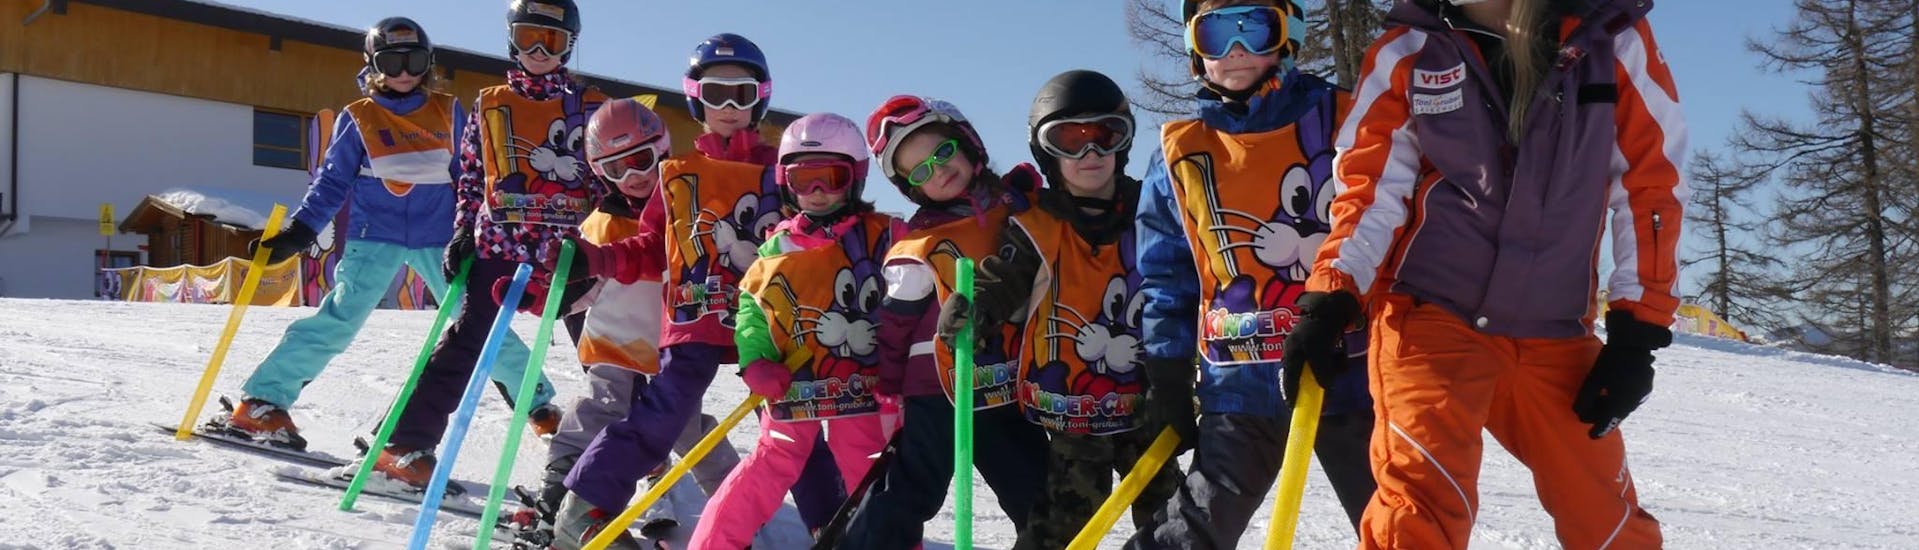 Cours de ski "Demi-journée" pour Enfants (4-14 ans) - Tous niveaux avec Ecole de ski Toni Gruber.